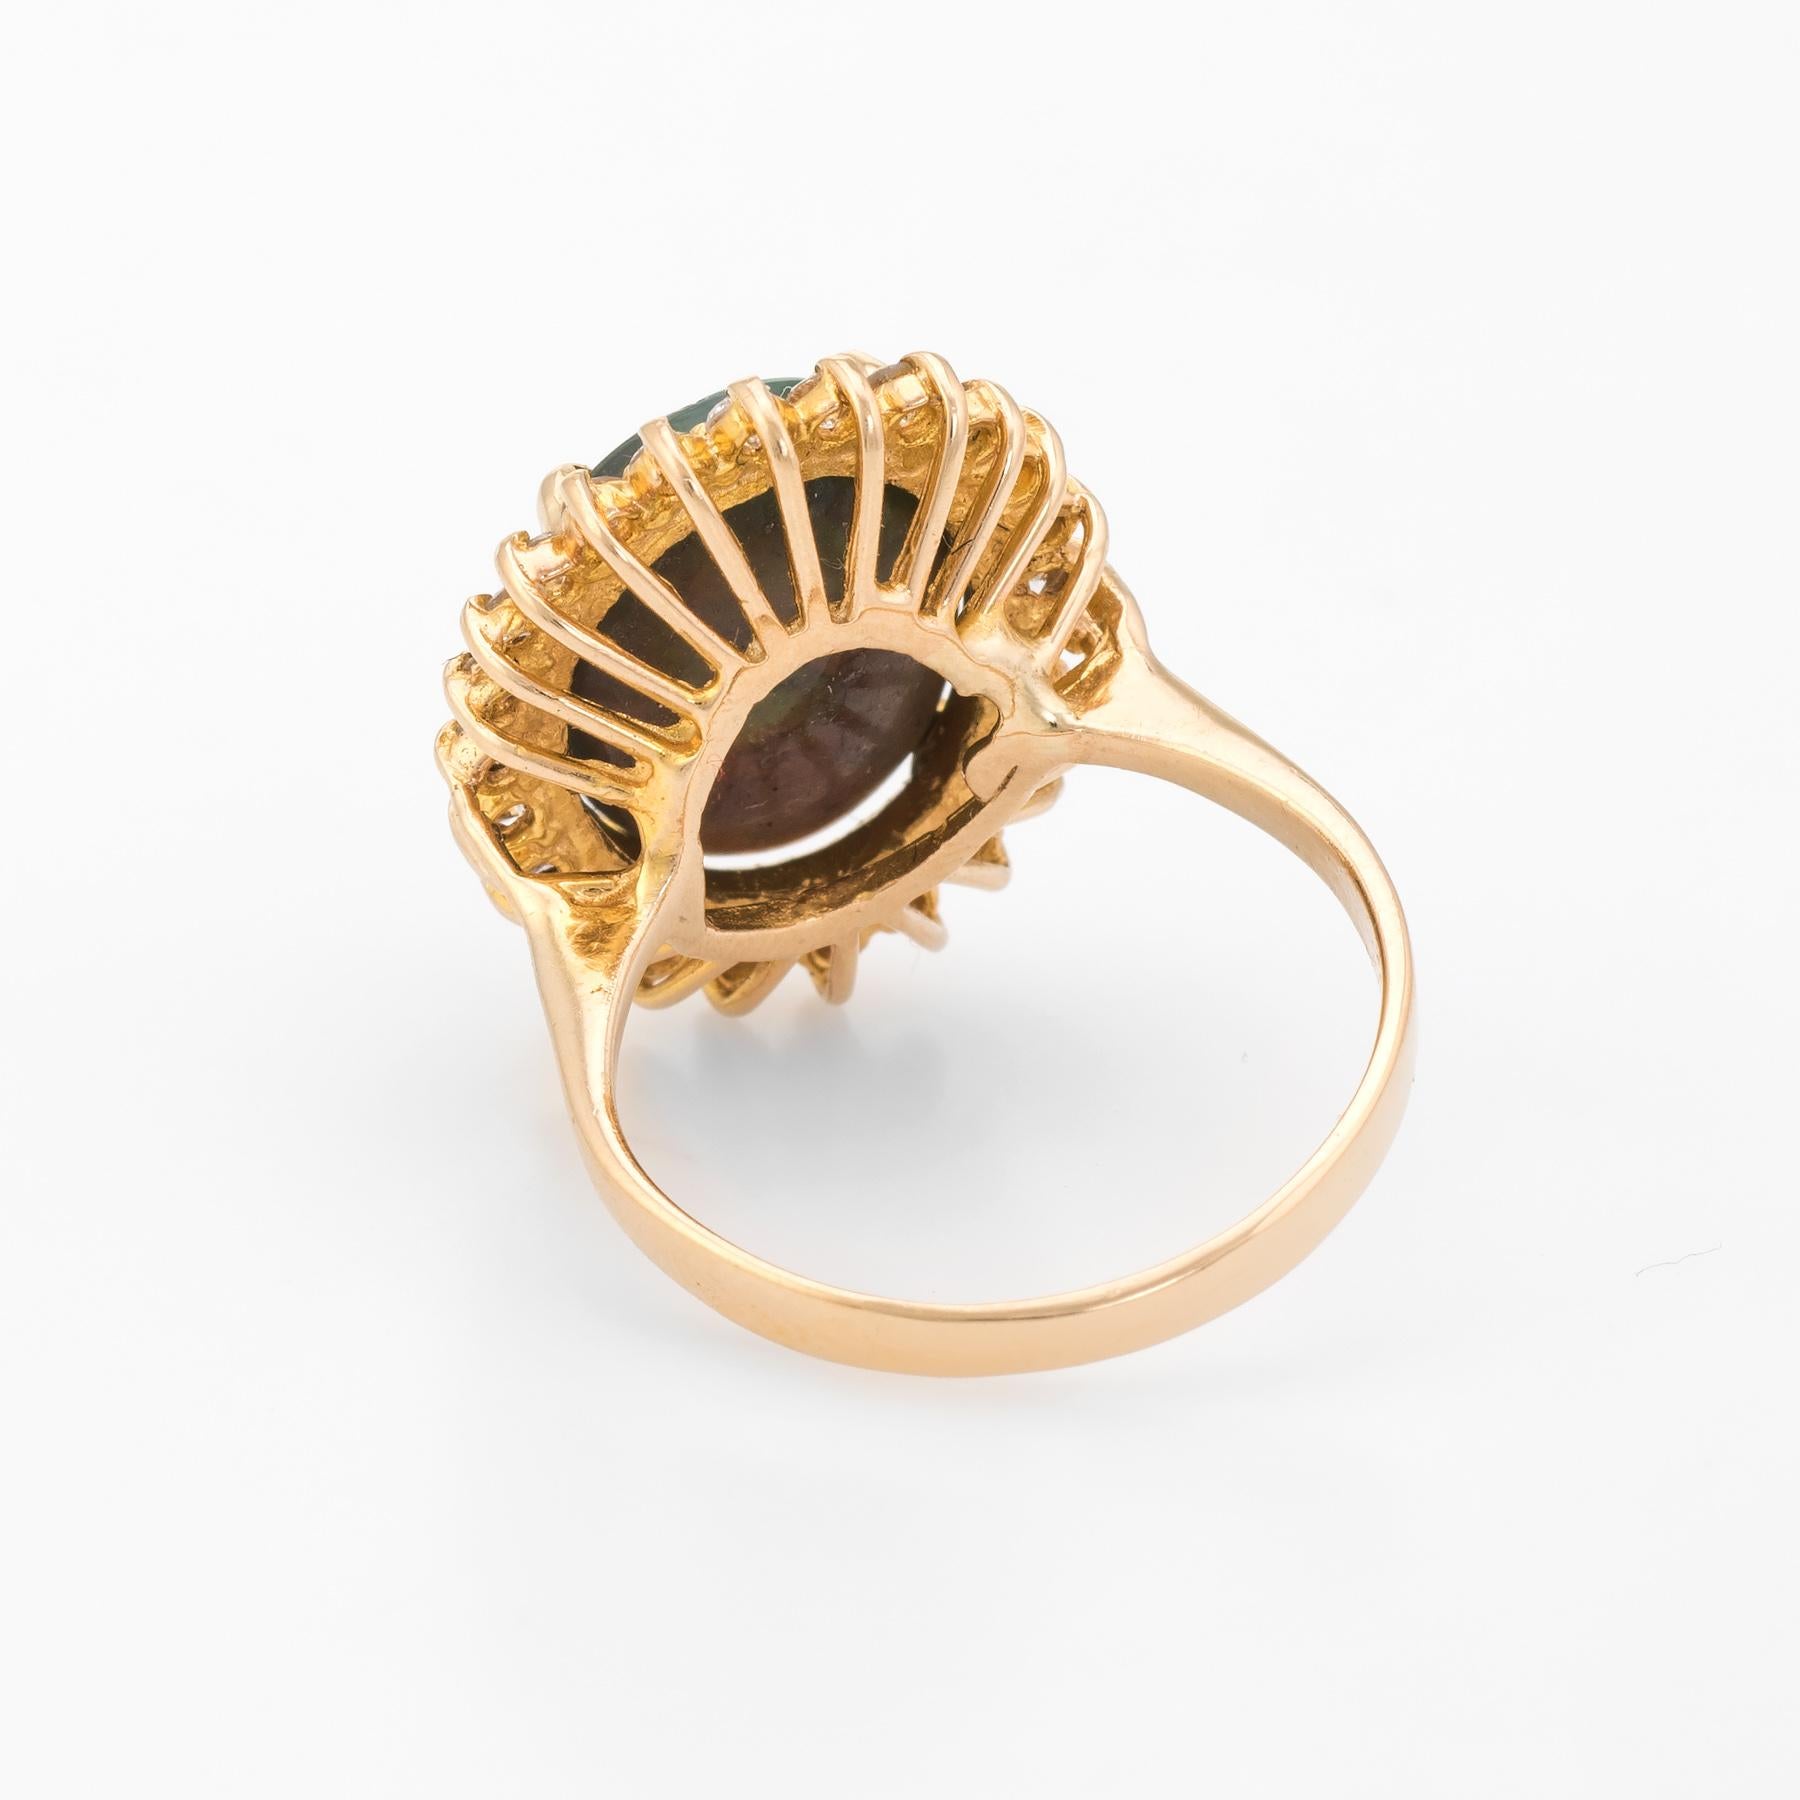 Women's Vintage Natural Black Opal Diamond Ring 18 Karat Yellow Gold Cocktail Statement